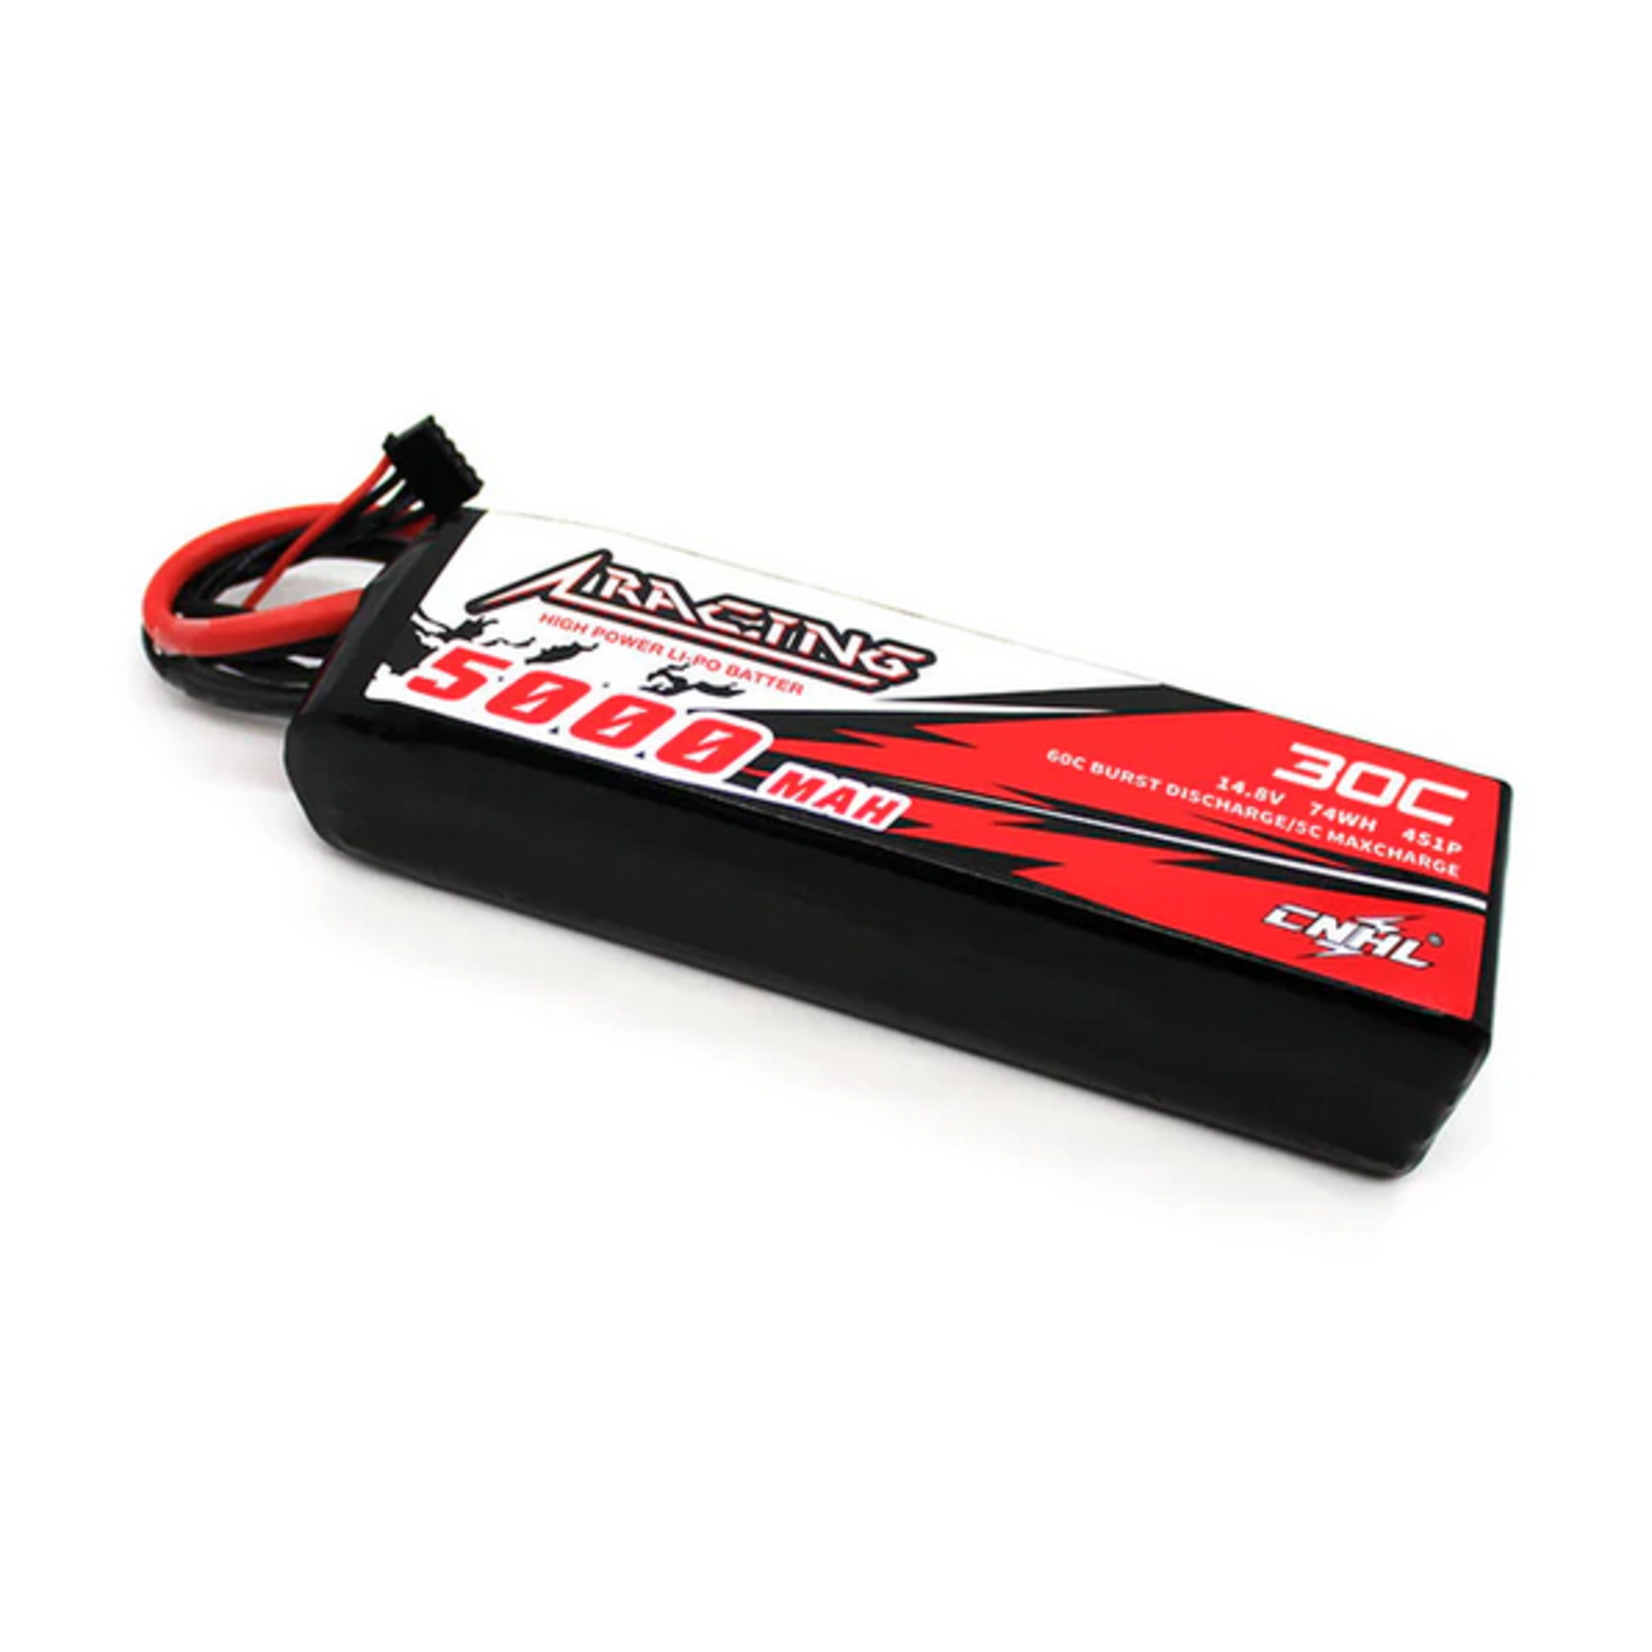 CNHL Racing CNHL Racing Series 5000mAh 14.8V 30C 4S LiPo Battery w/TRX Plug #TR500304